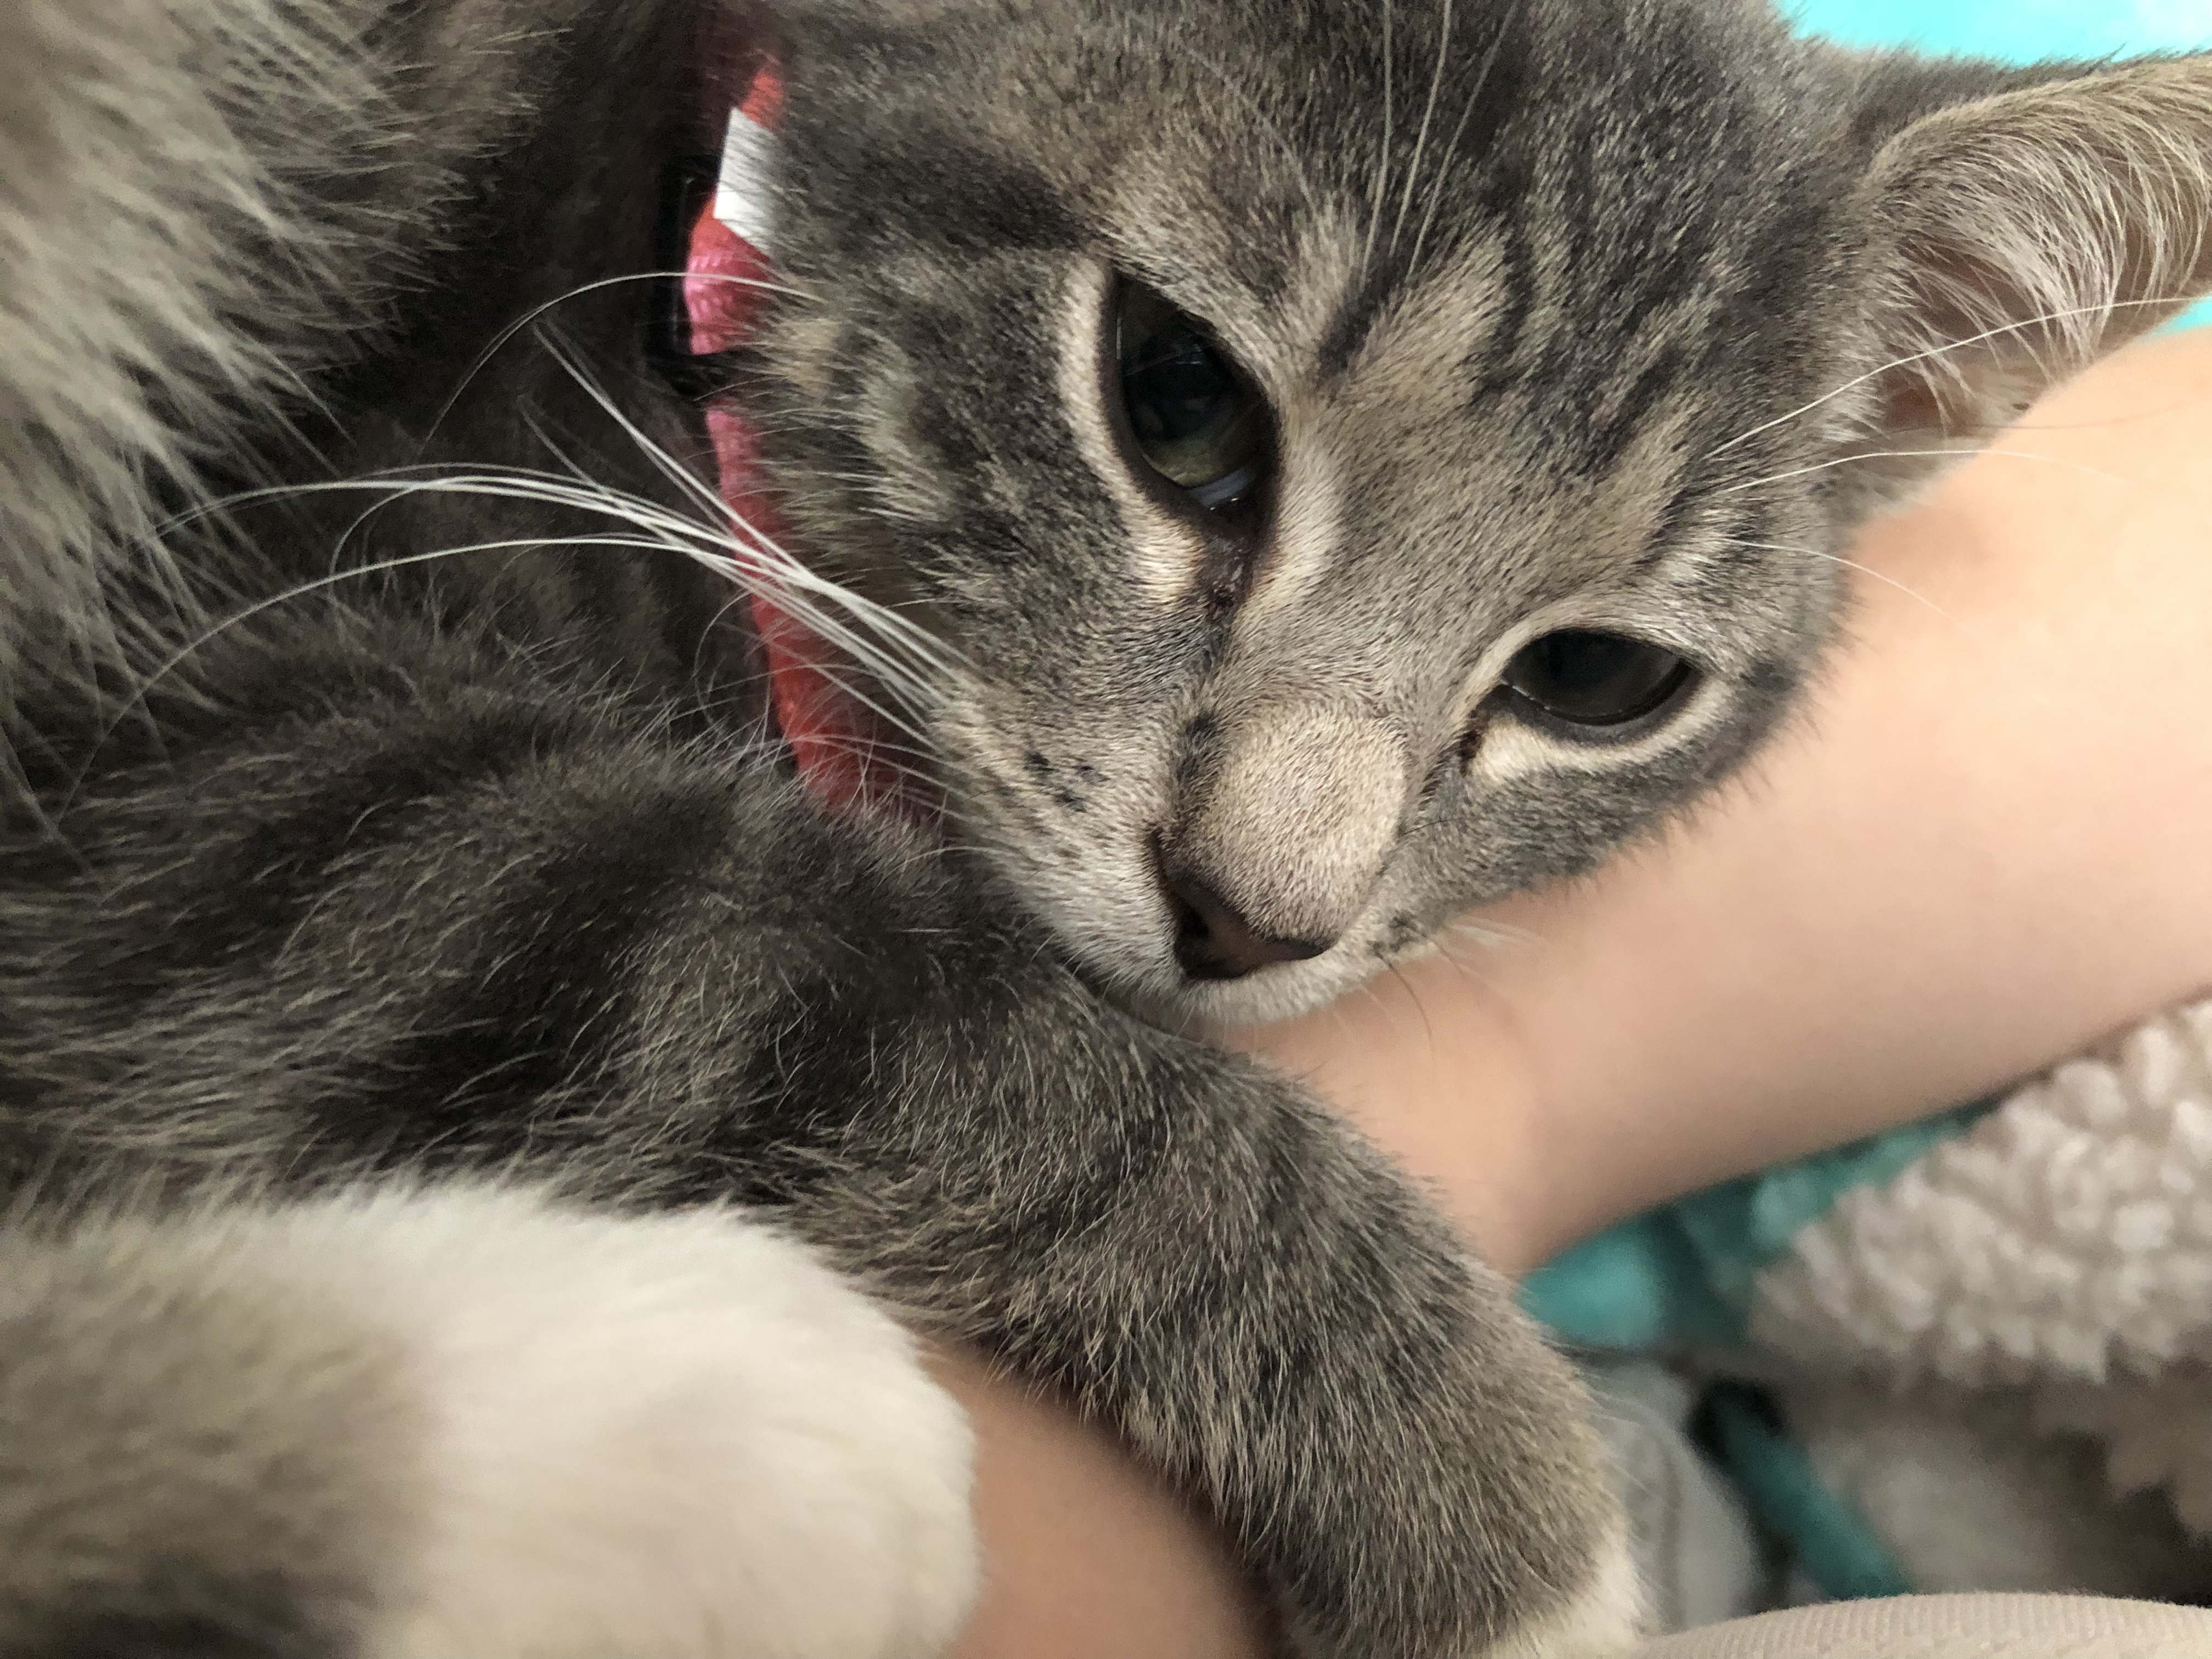 adoptable Cat in Evans,GA named Ellie